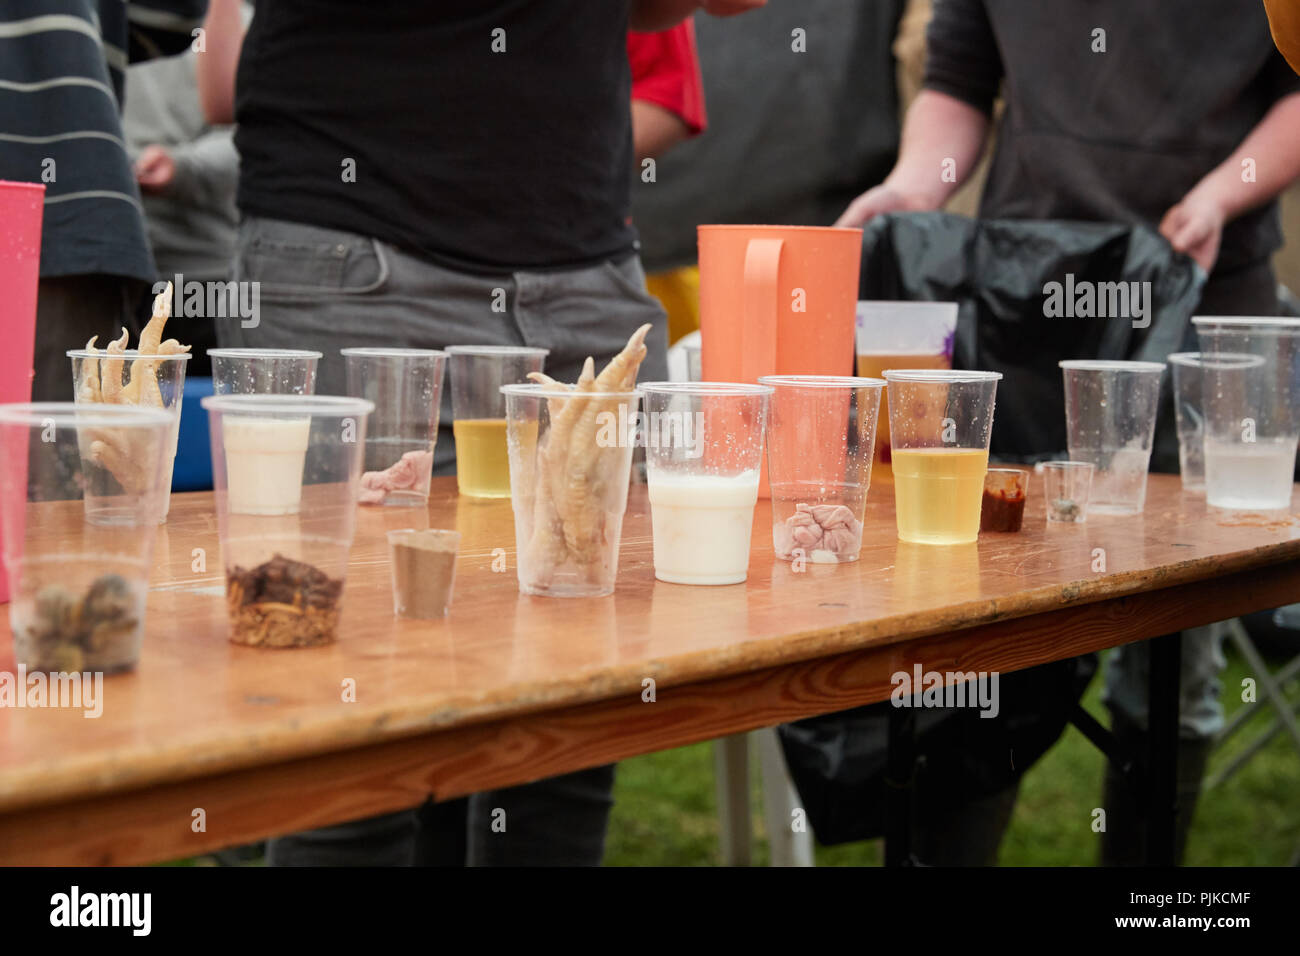 Tasses en plastique transparent contenant des aliments pour manger un dégoûtant concours défi à la Plaine des jeux, Thorney, Somerset, Angleterre Banque D'Images